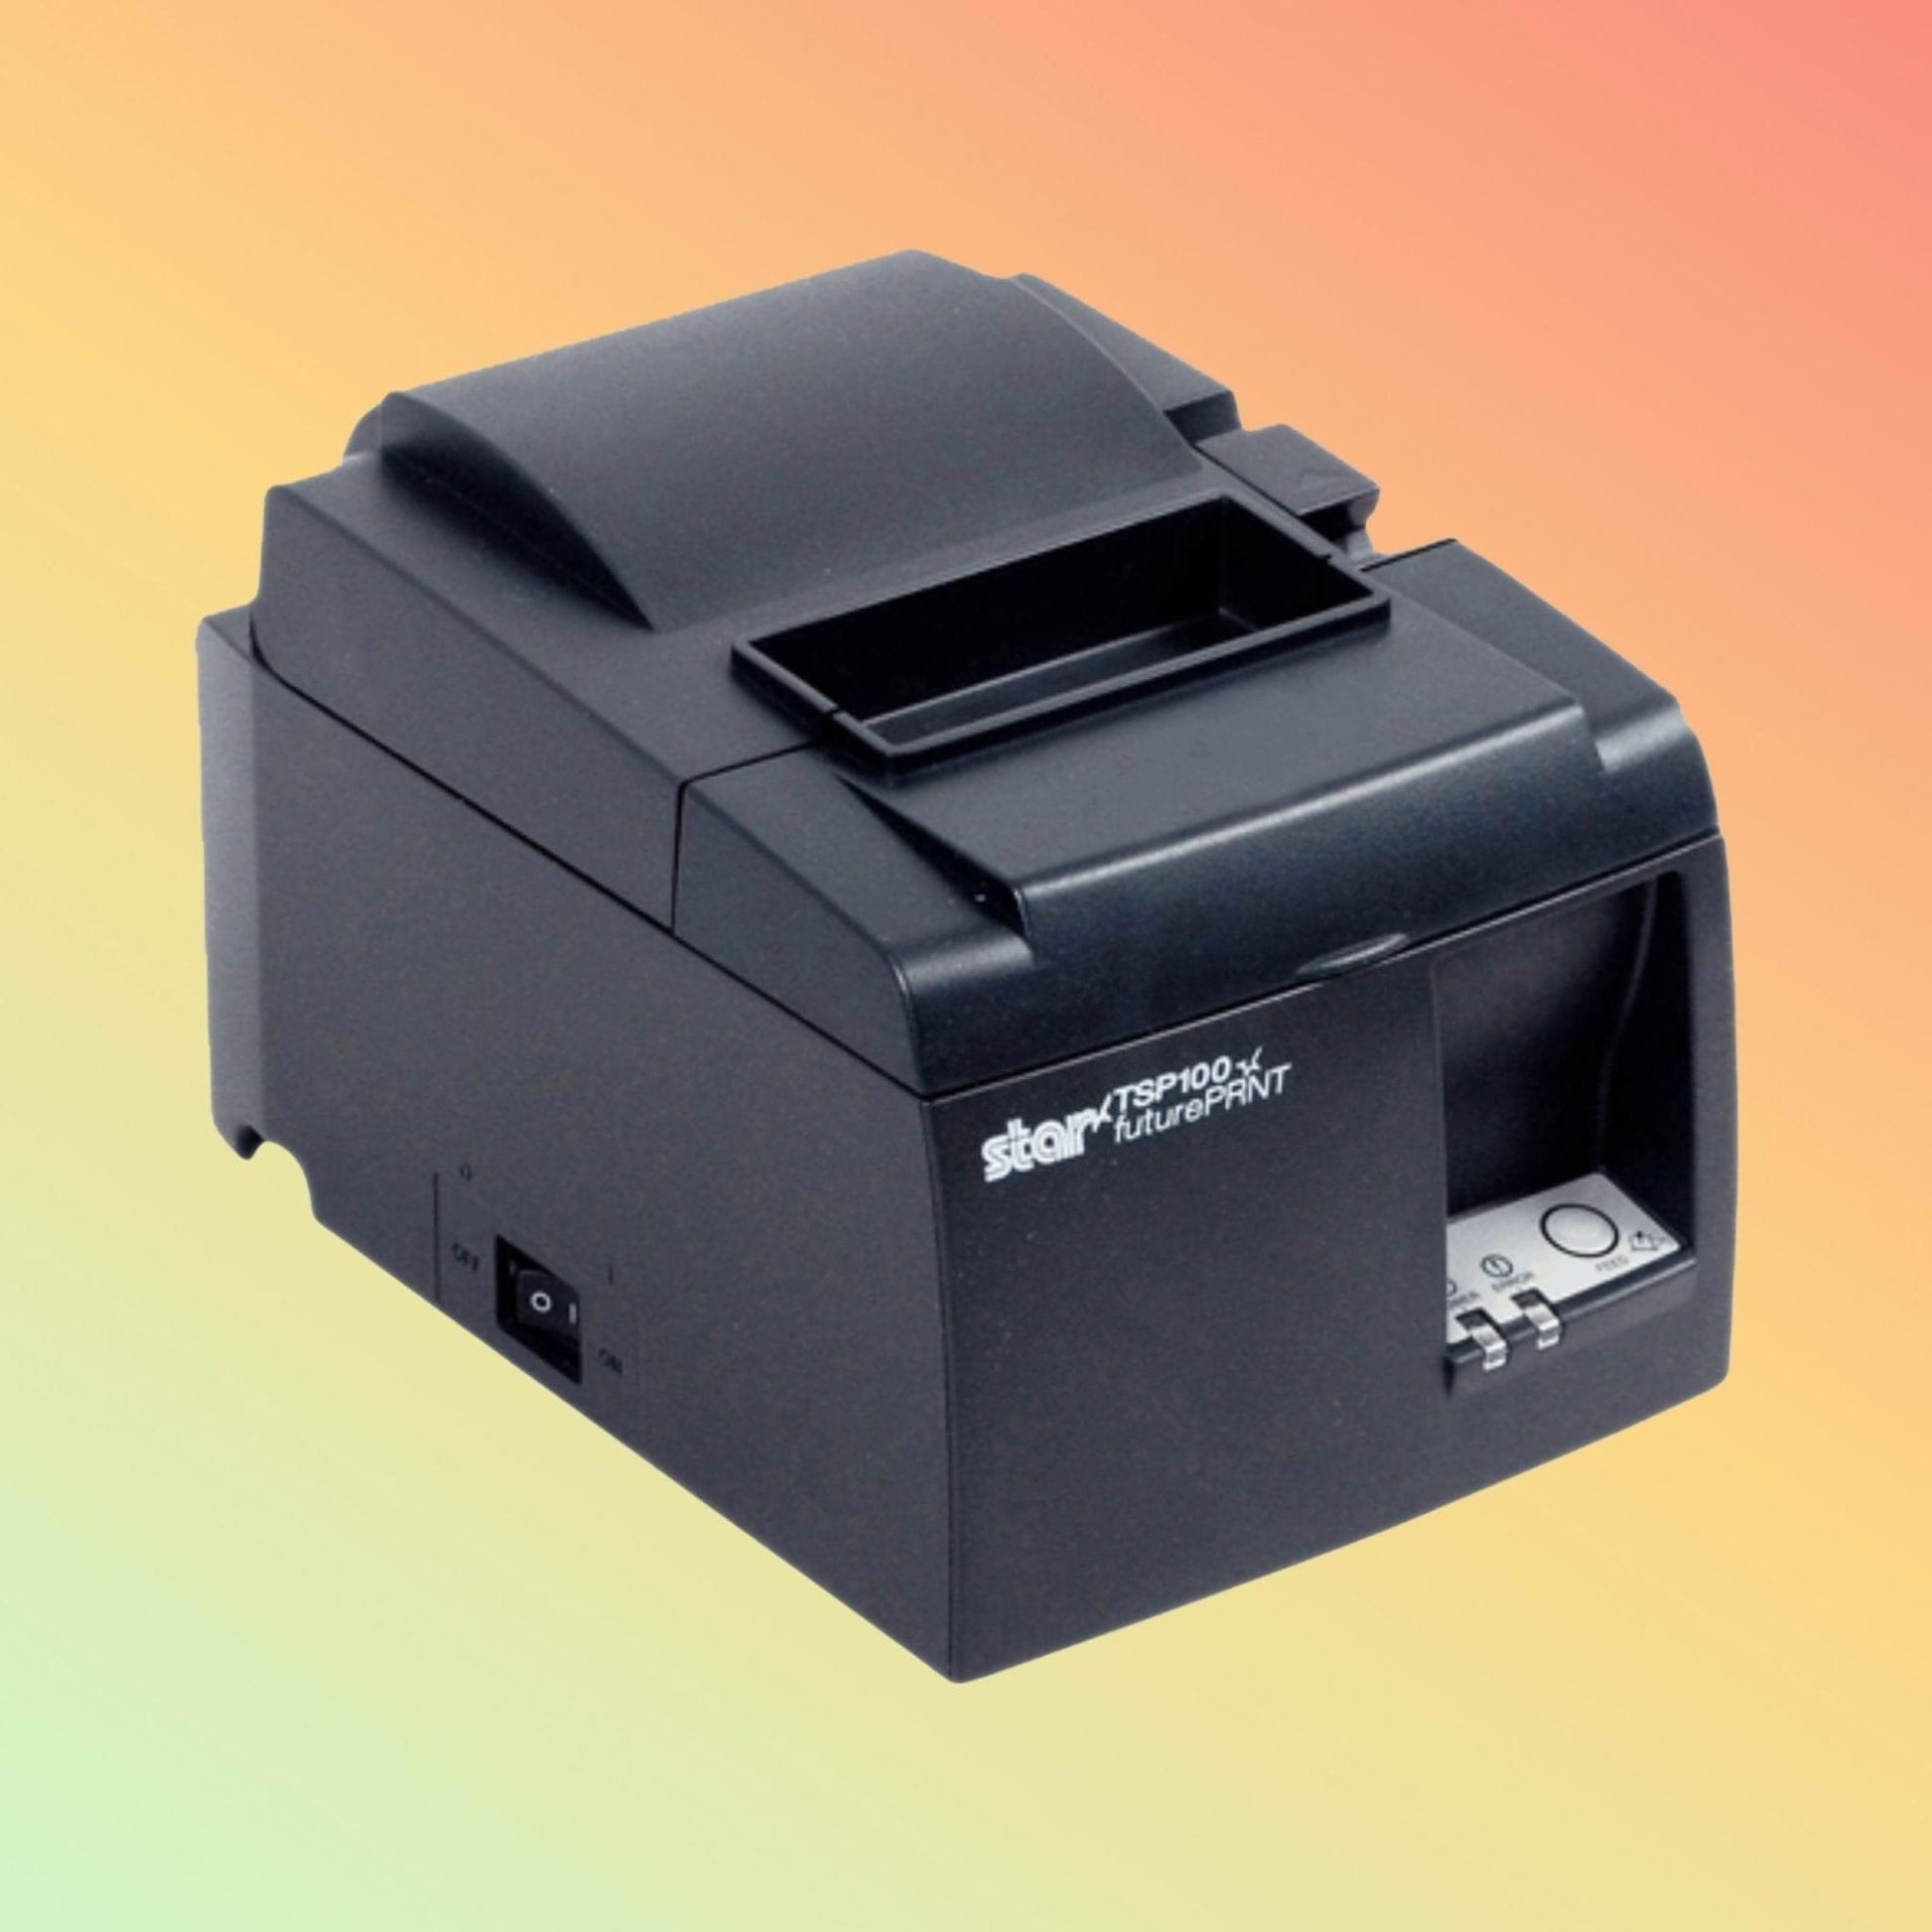 Receipt Printer - Star TSP143III - Neotech